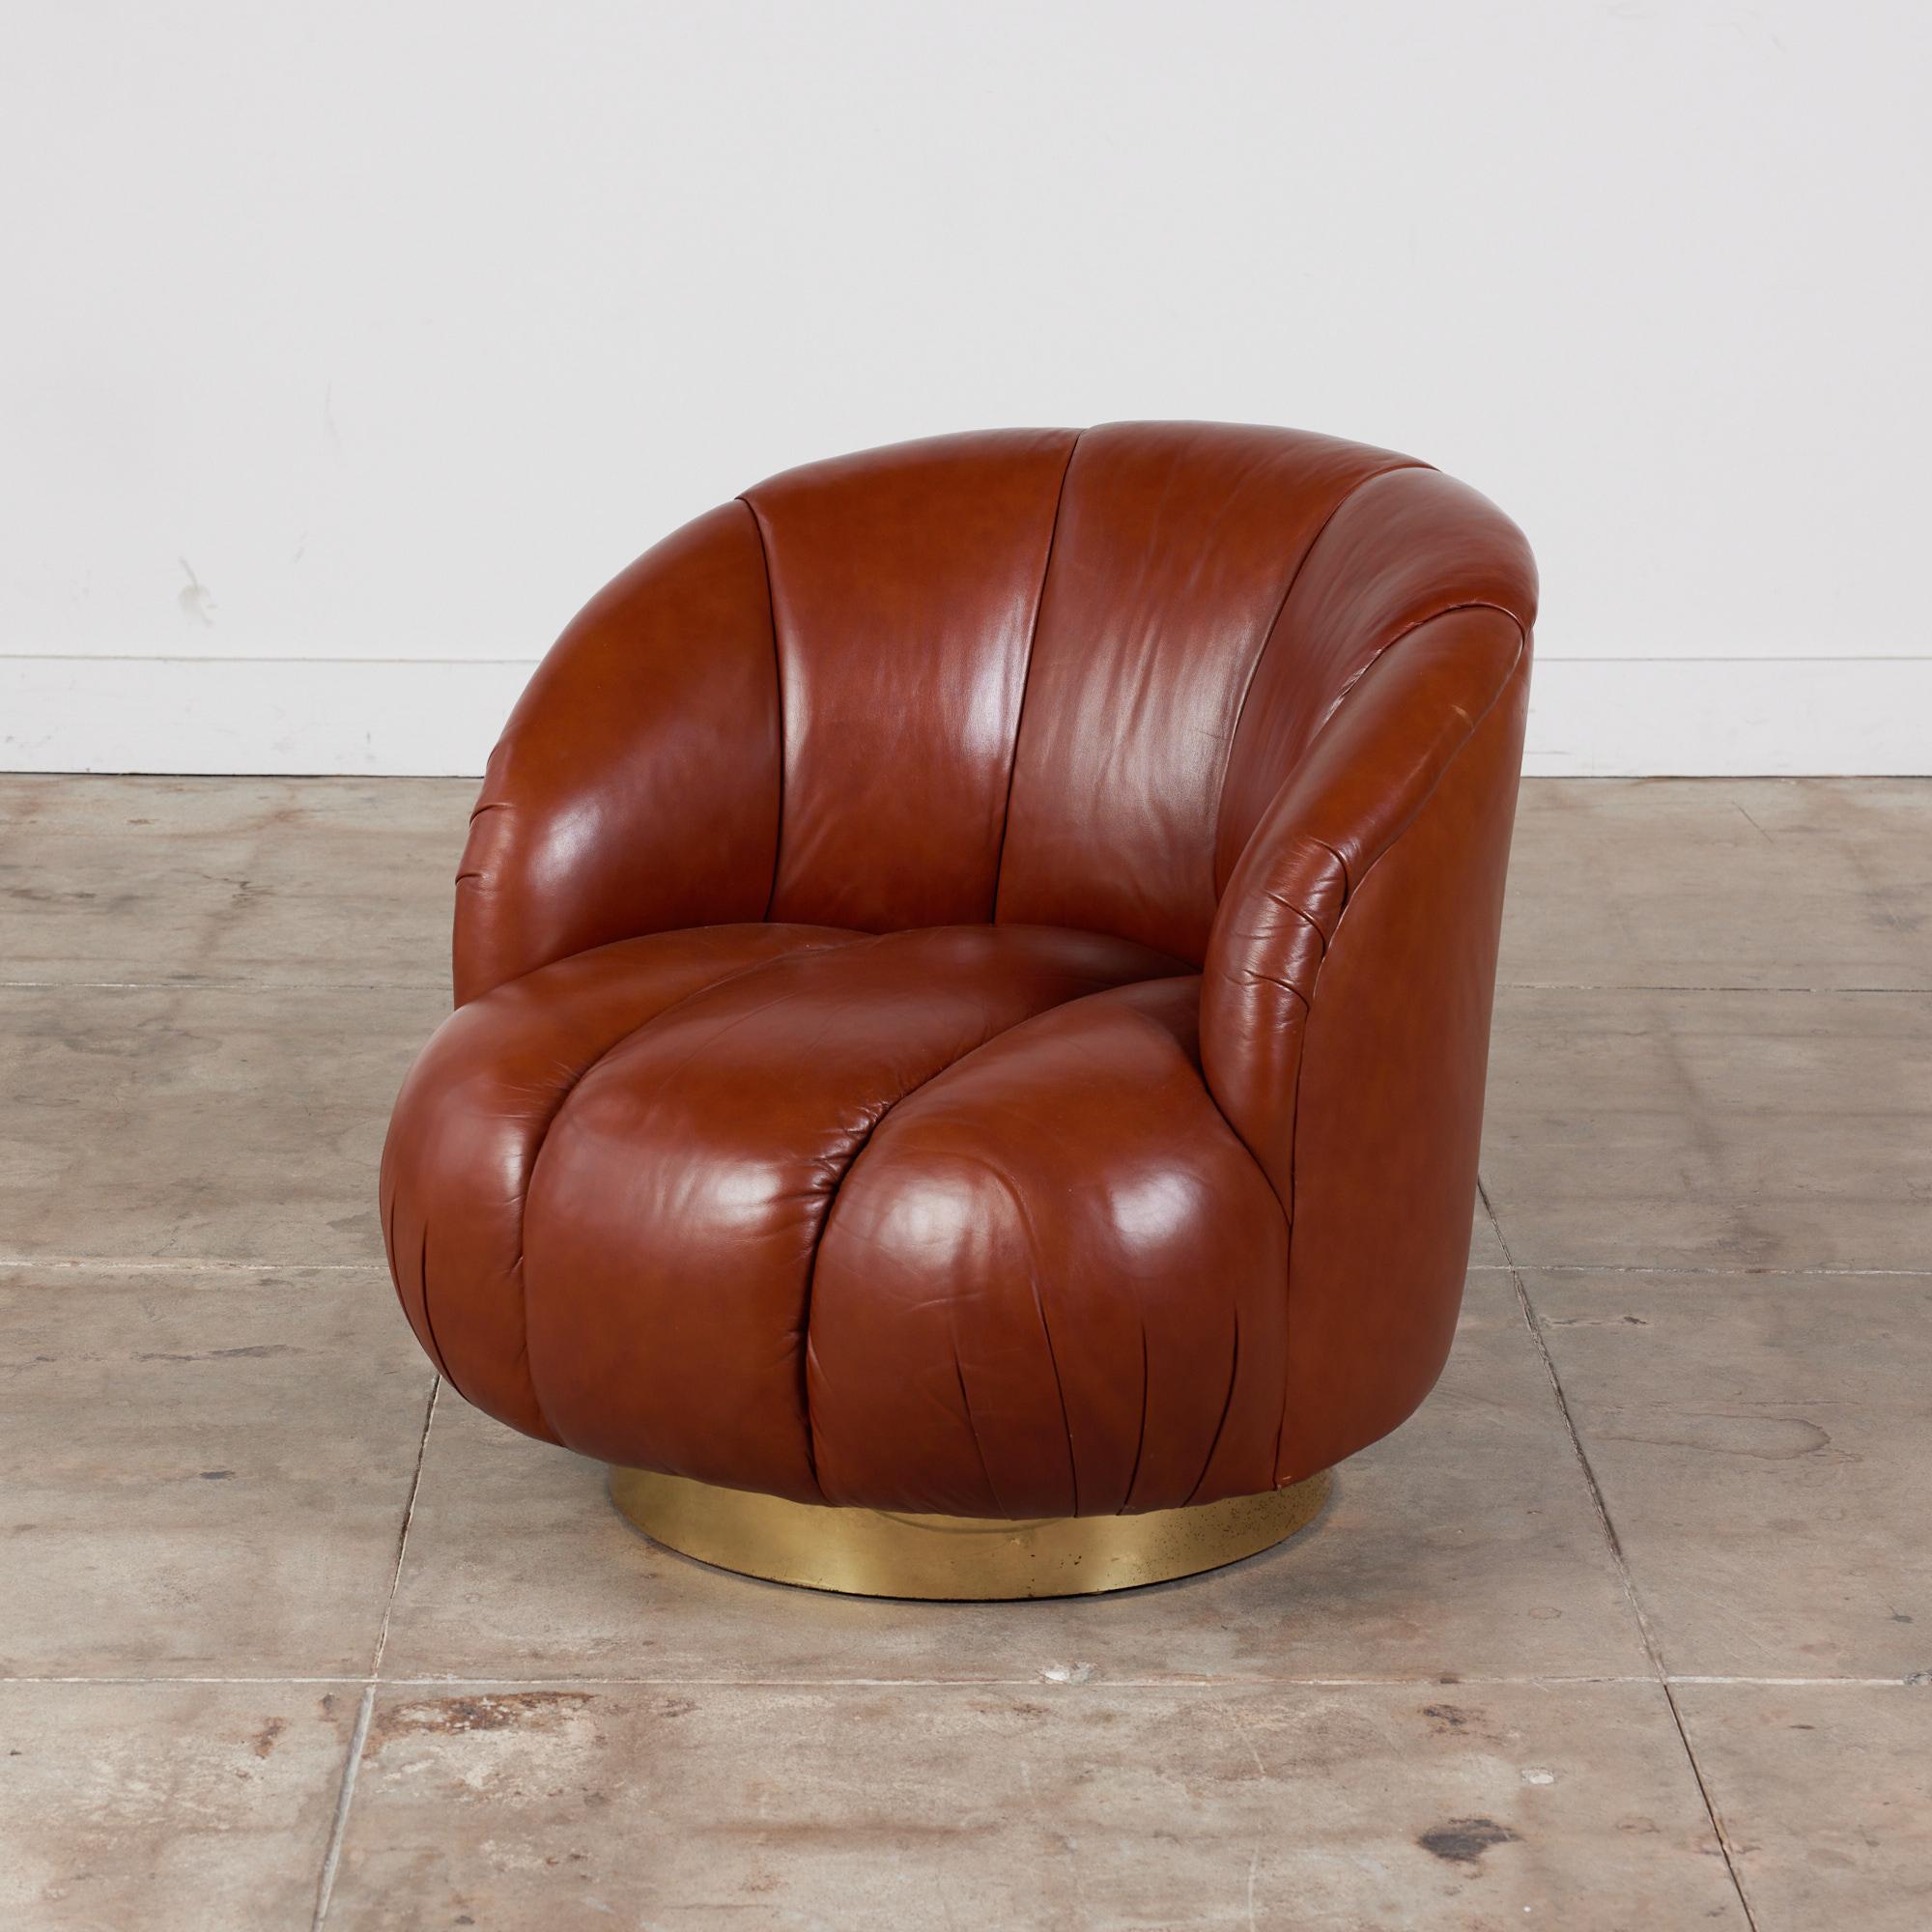 Drehstuhl im Karl-Springer-Stil, ca. 1980er Jahre. Der Stuhl ist durchgehend weich geschwungen und mit braunem, getuftetem Leder gepolstert. Die abgerundete Rückenlehne bietet Komfort und Stil. Der Stuhl ruht auf einem schlichten runden Drehfuß aus